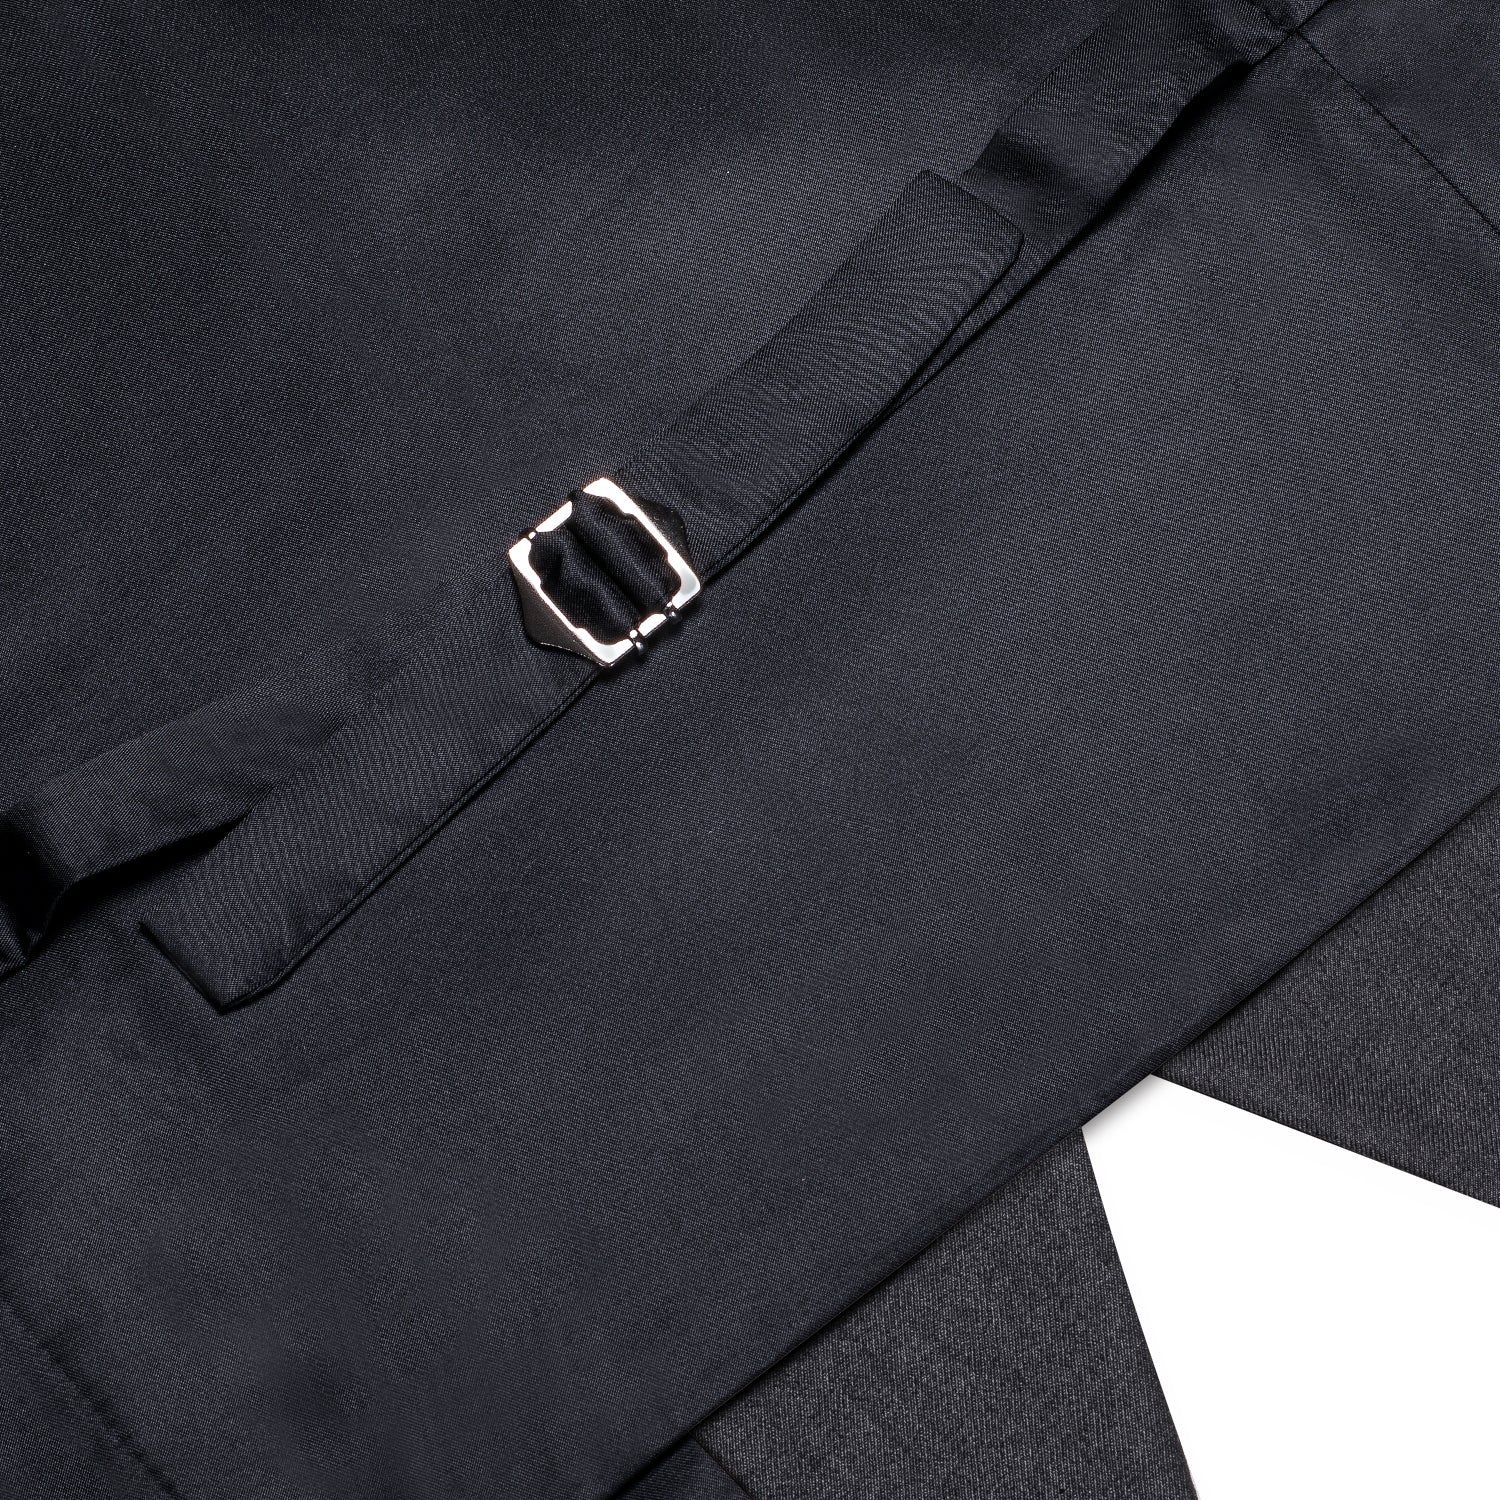 New Dark Grey Solid Silk Men's Single Vest Waistcoat